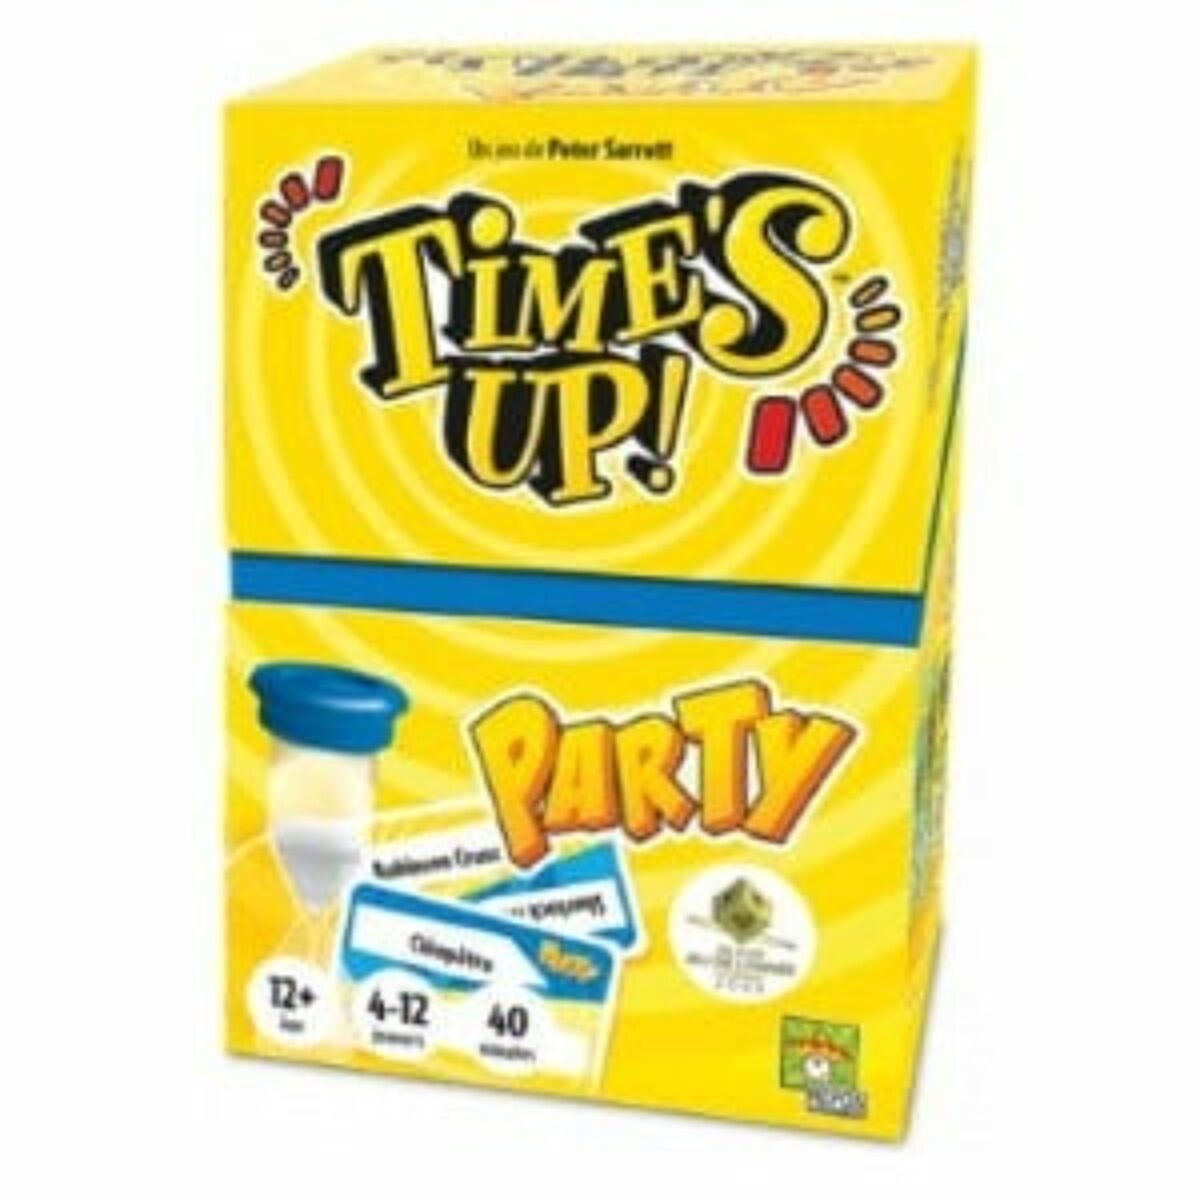 Time's up! - Kids: jeu de société